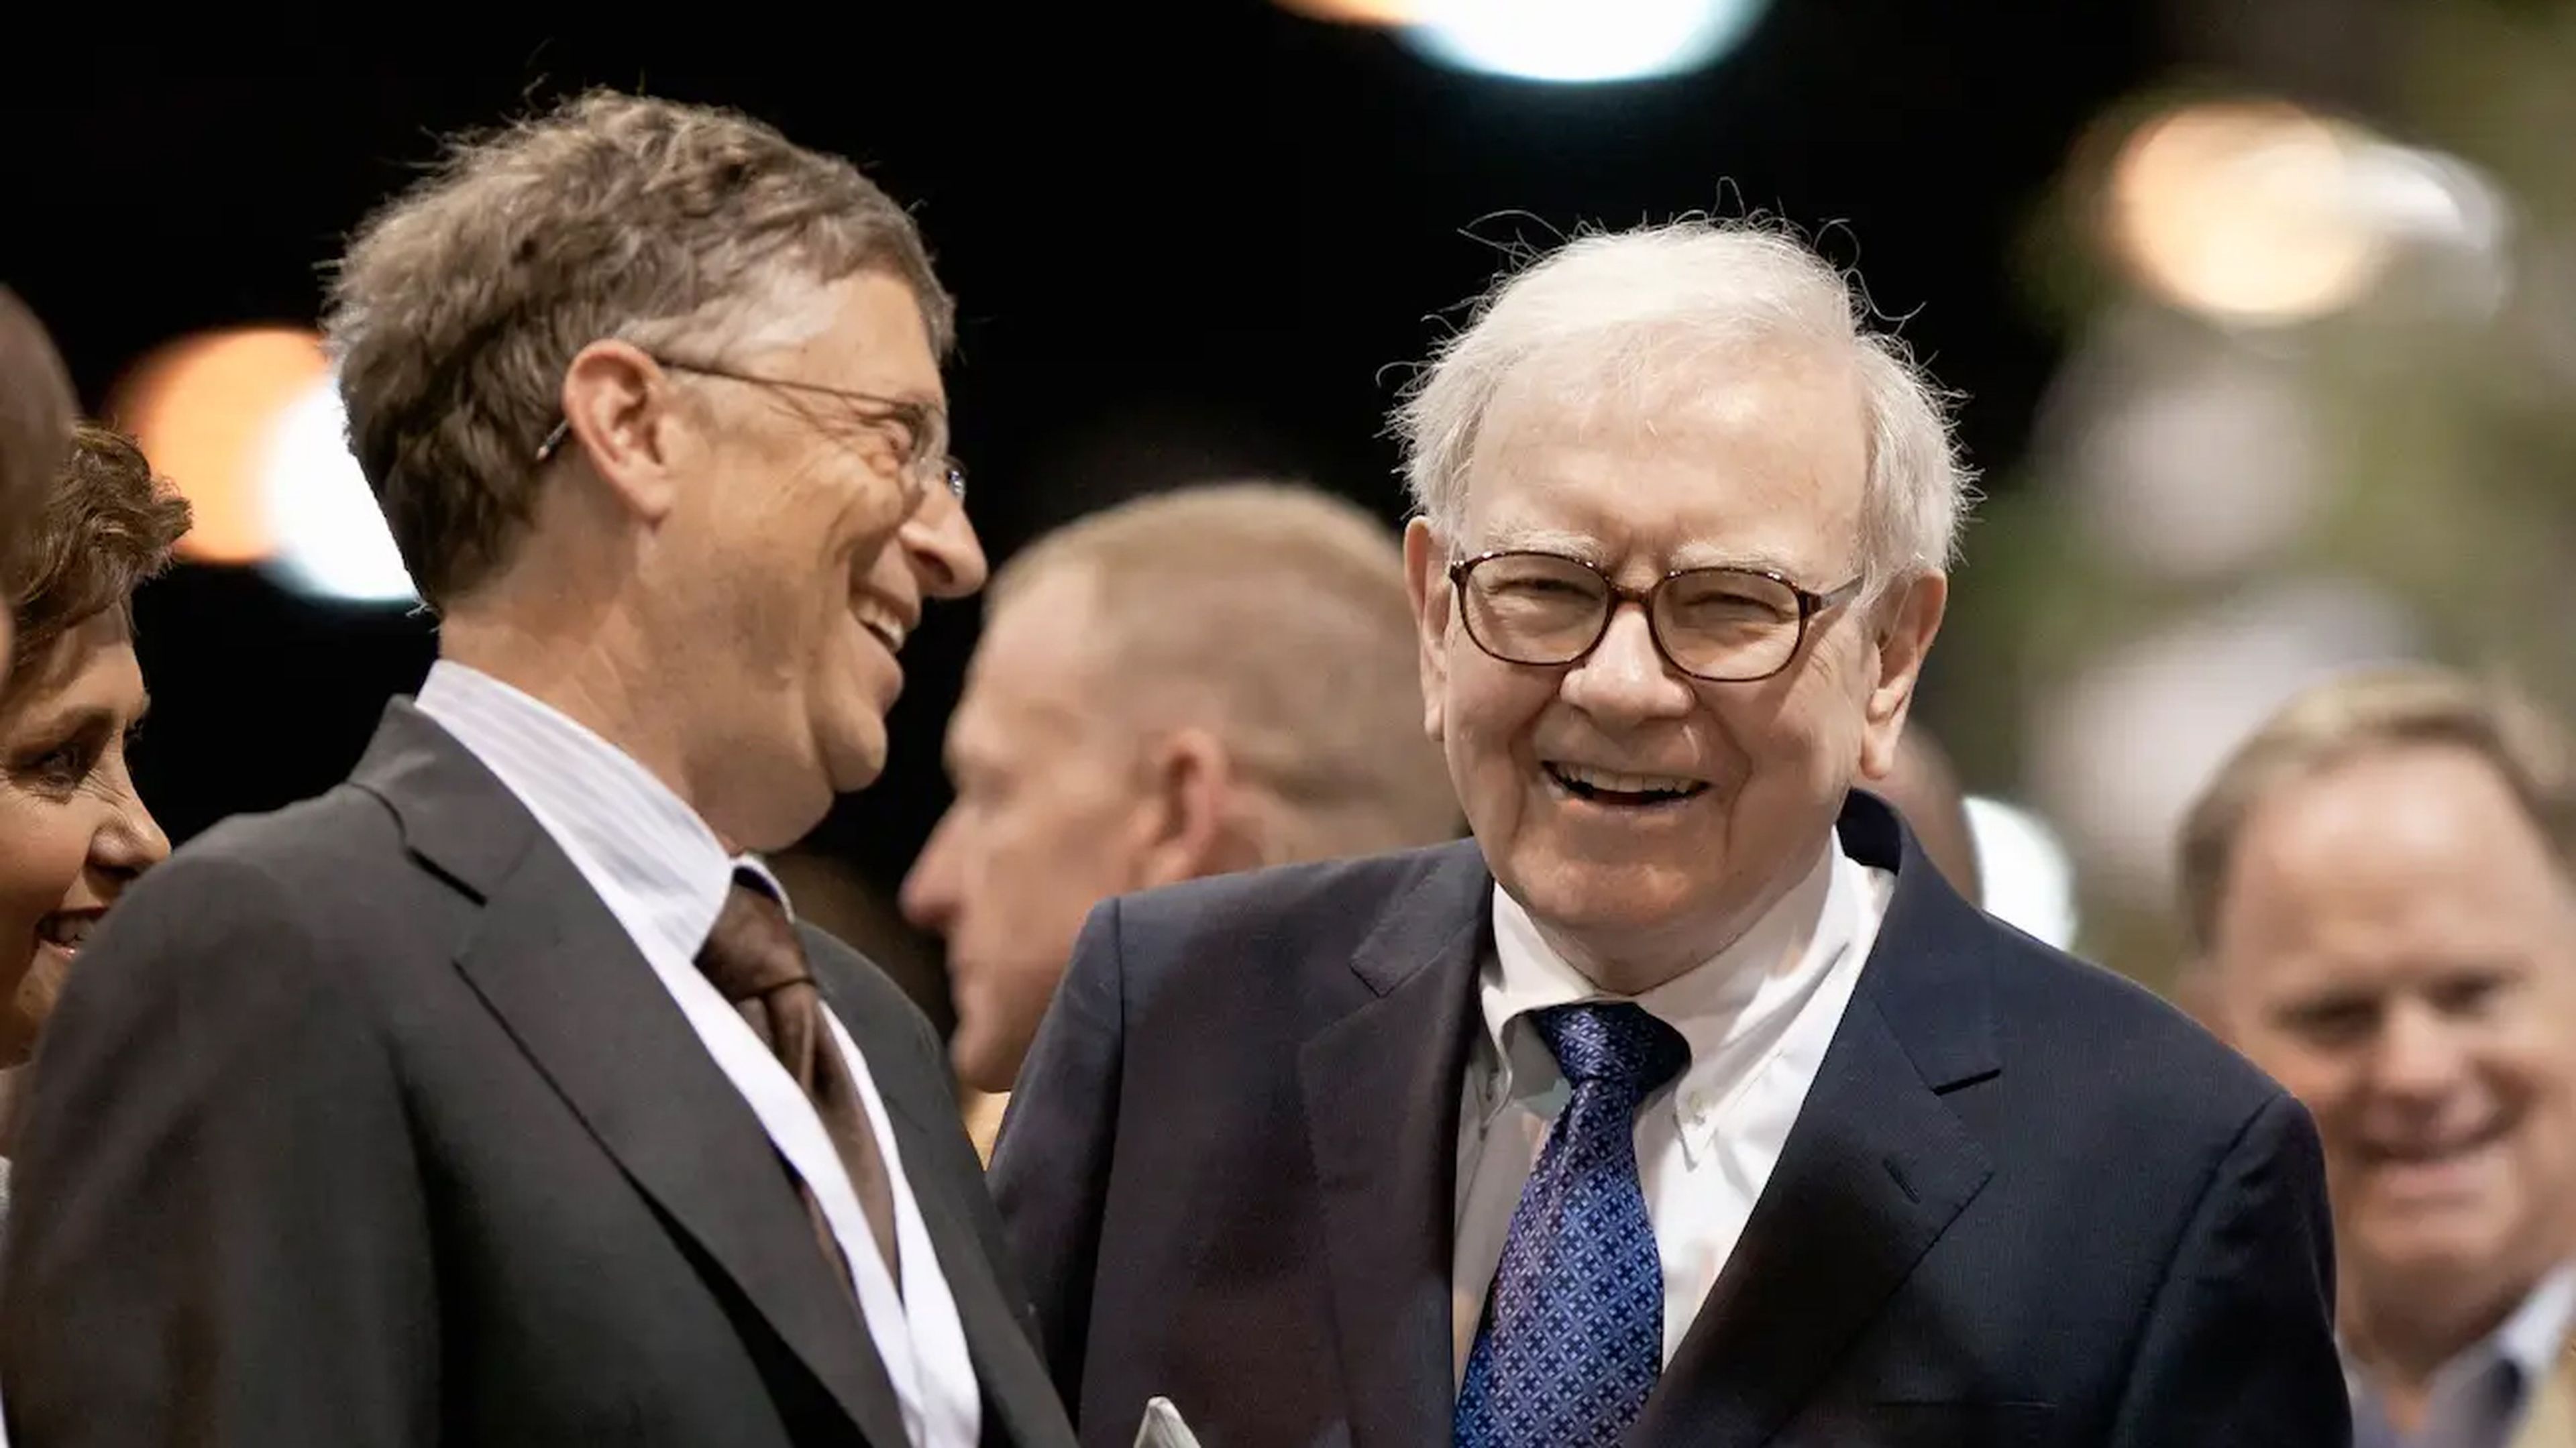 La adopción inteligente de riesgos, la concentración y la determinación ayudan a multimillonarios como Bill Gates y Warren Buffett a construir y mantener su riqueza.